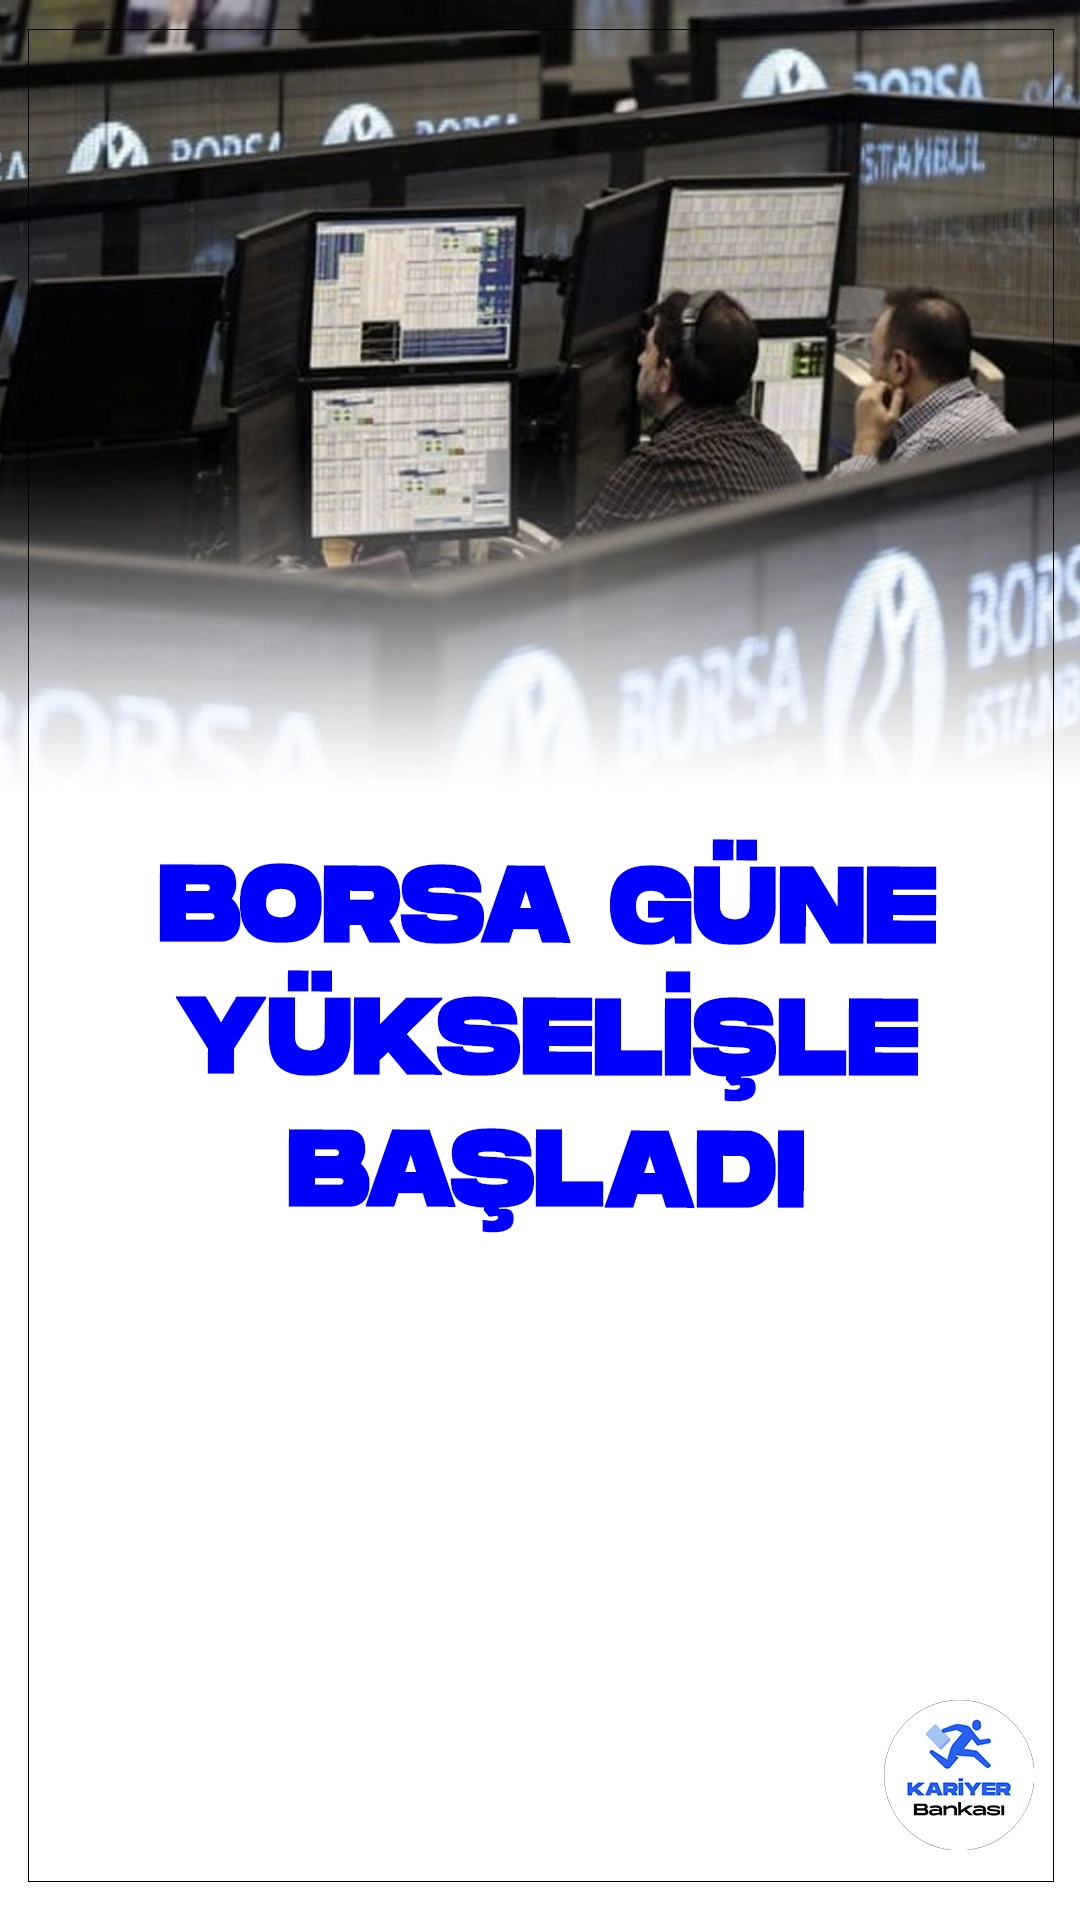 Borsa İstanbul Güne Yükselişle Başladı.Borsa İstanbul'da BIST 100 endeksi, güne yüzde 1,32 yükselişle 10.528,92 puandan başladı. Açılışta BIST 100 endeksi, önceki kapanışa göre 137,03 puan ve yüzde 1,32 artarak 10.528,92 puana çıktı.